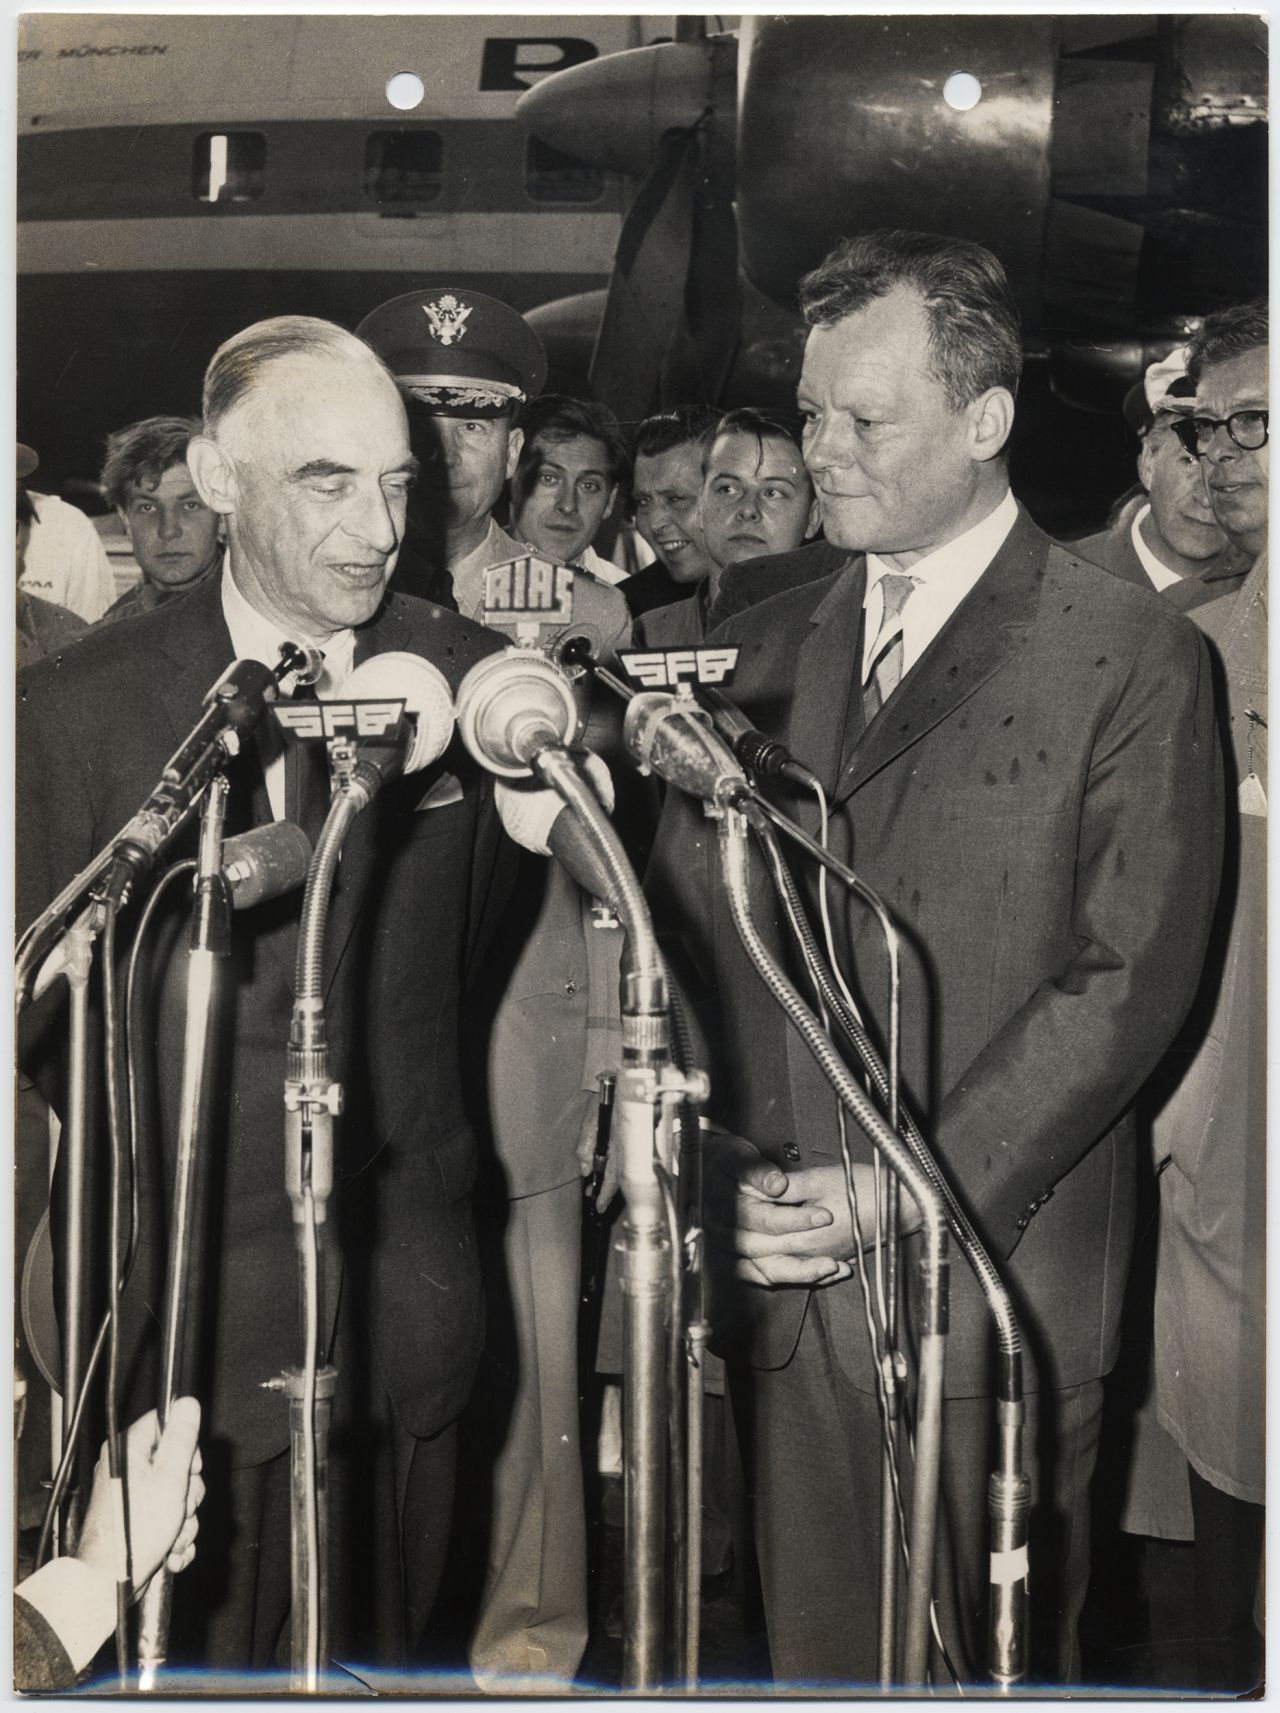 General Lucius D. Clay und der Regierende Bürgermeister von Berlin, Willy Brandt, auf dem Flughafen Tempelhof 1962.